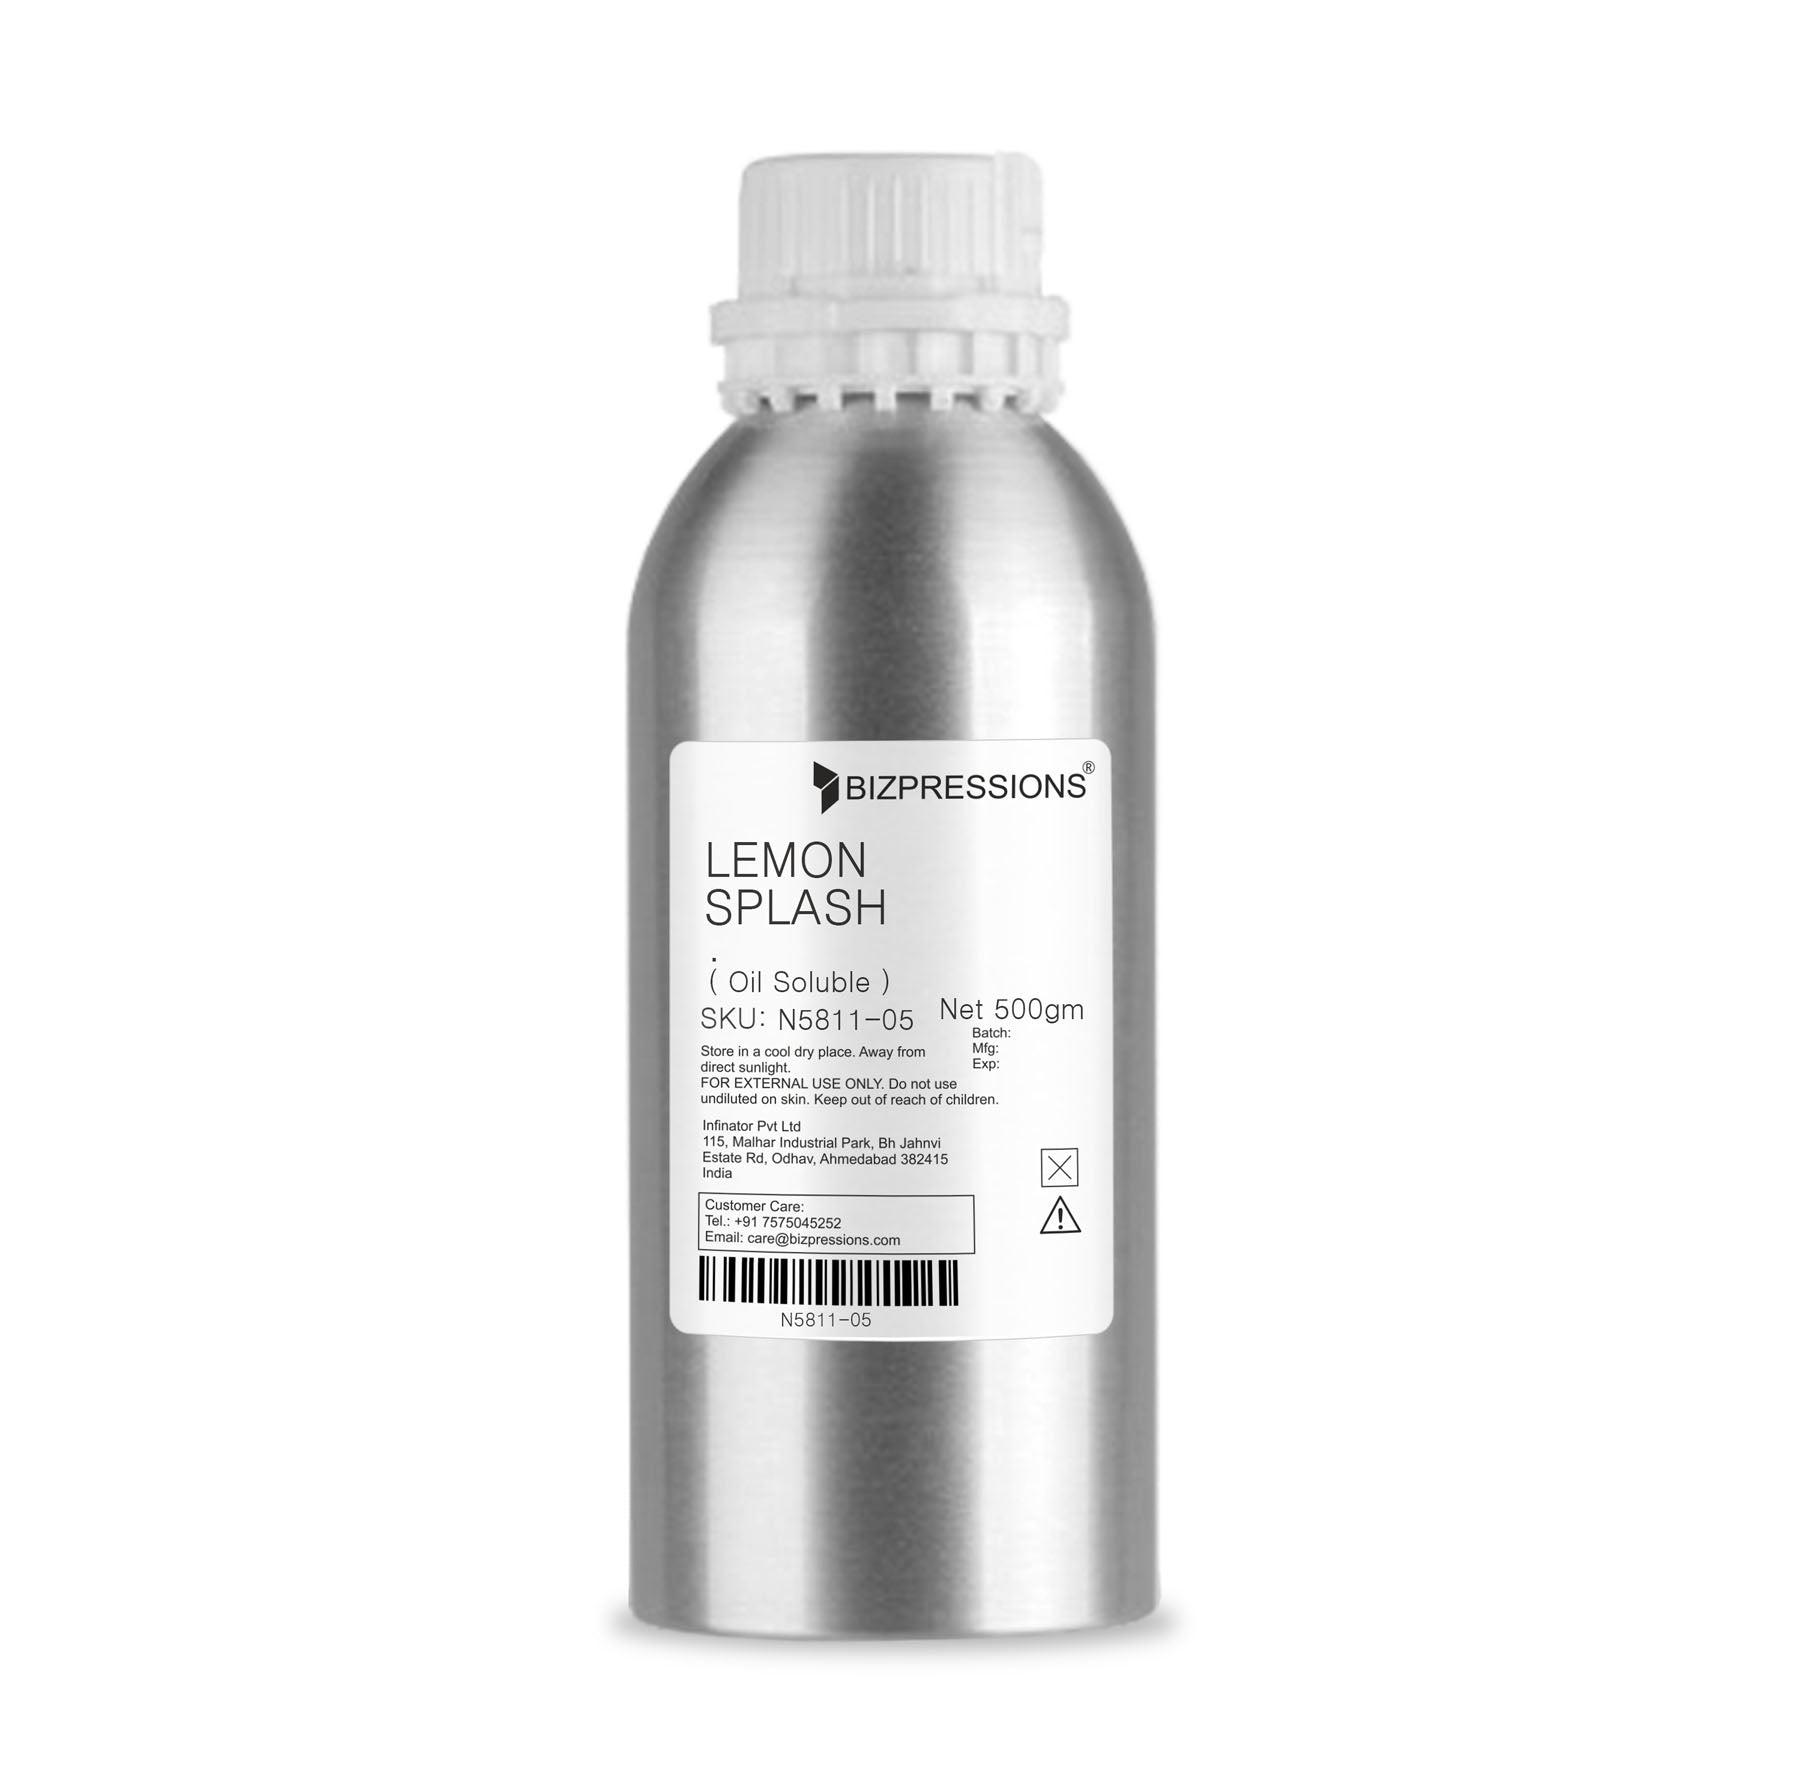 LEMON SPLASH - Fragrance ( Oil Soluble ) - 500 gm